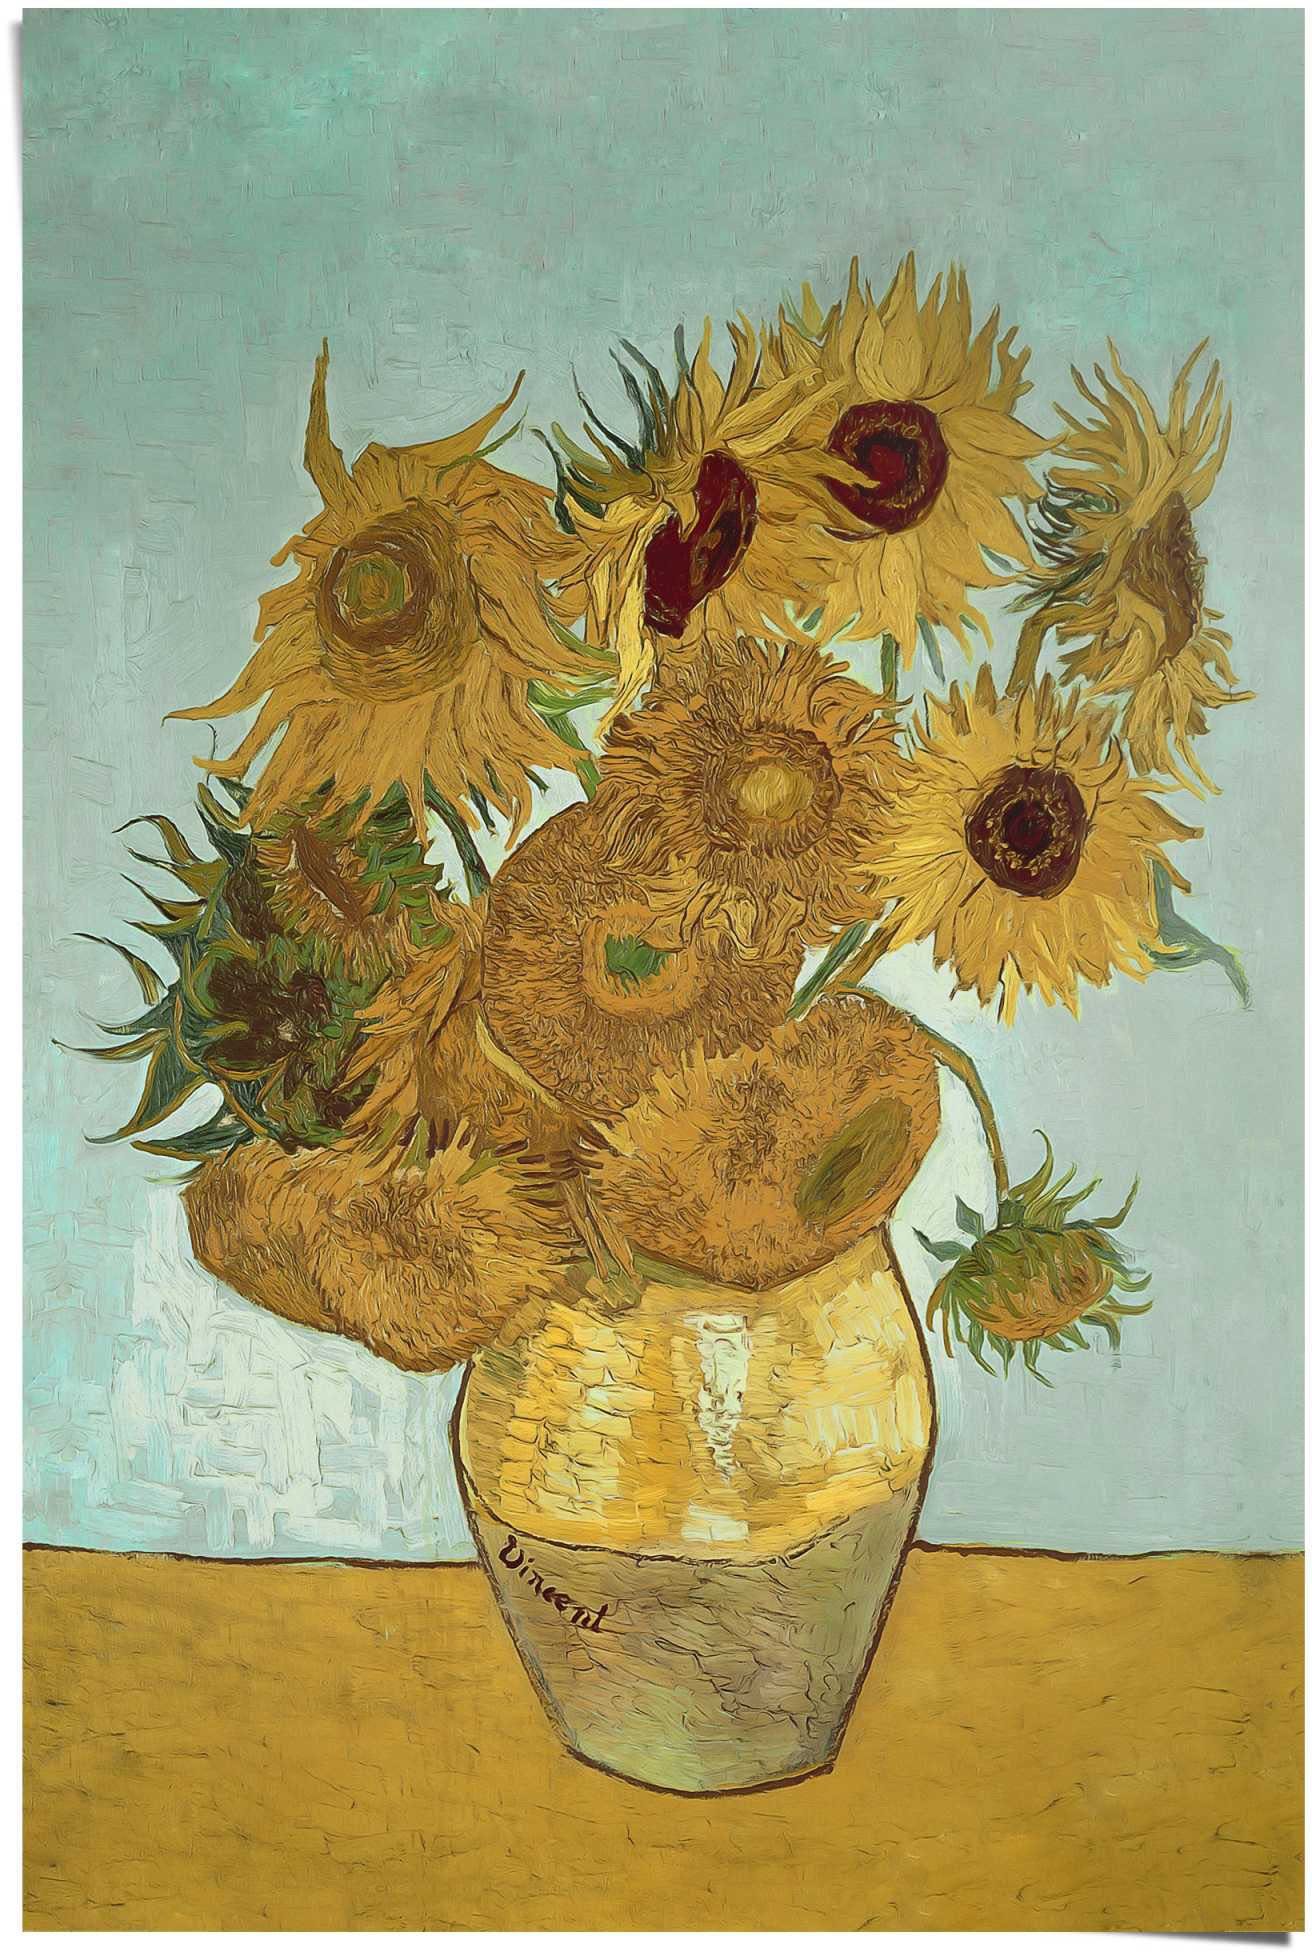 Reinders! Poster Sonnenblumen Vincent van Gogh Blüte Pflanze Berühmtes Gemälde (1 stuk)